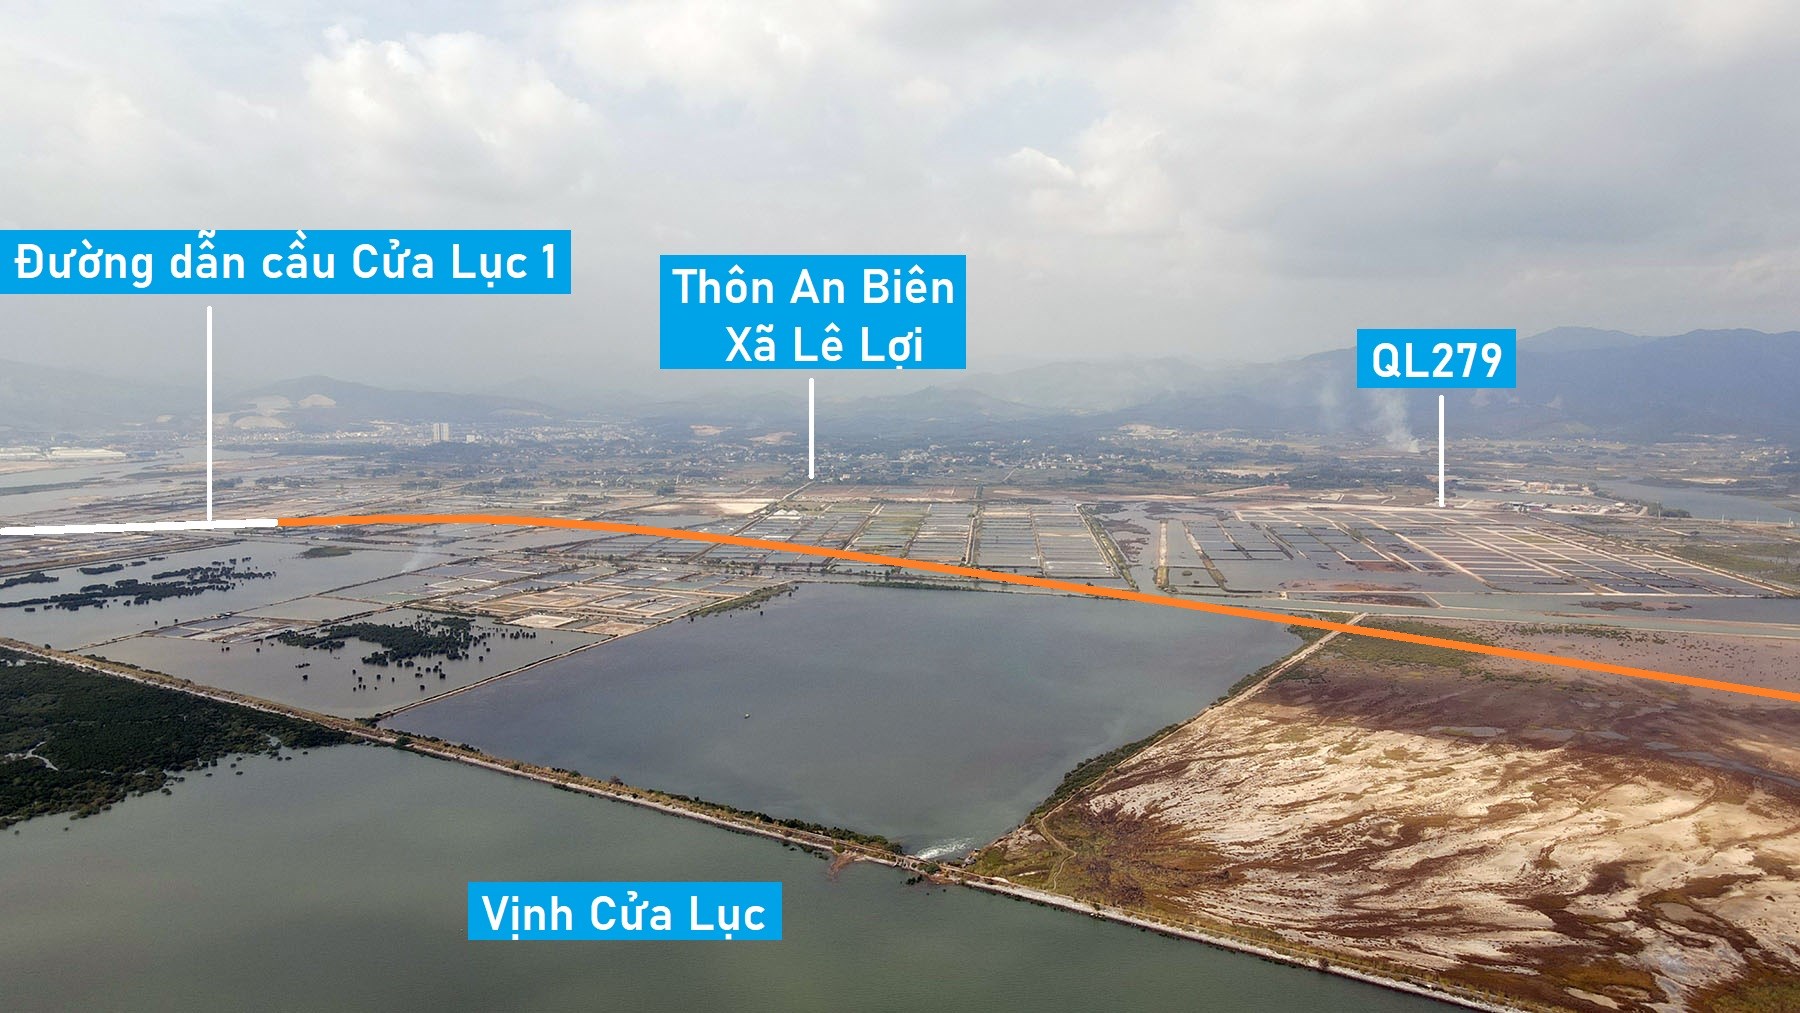 Vị trí tuyến đường gần 8 km sẽ mở kết nối cầu Cửa Lục 1 với cầu Cửa Lục 3 ở Quảng Ninh